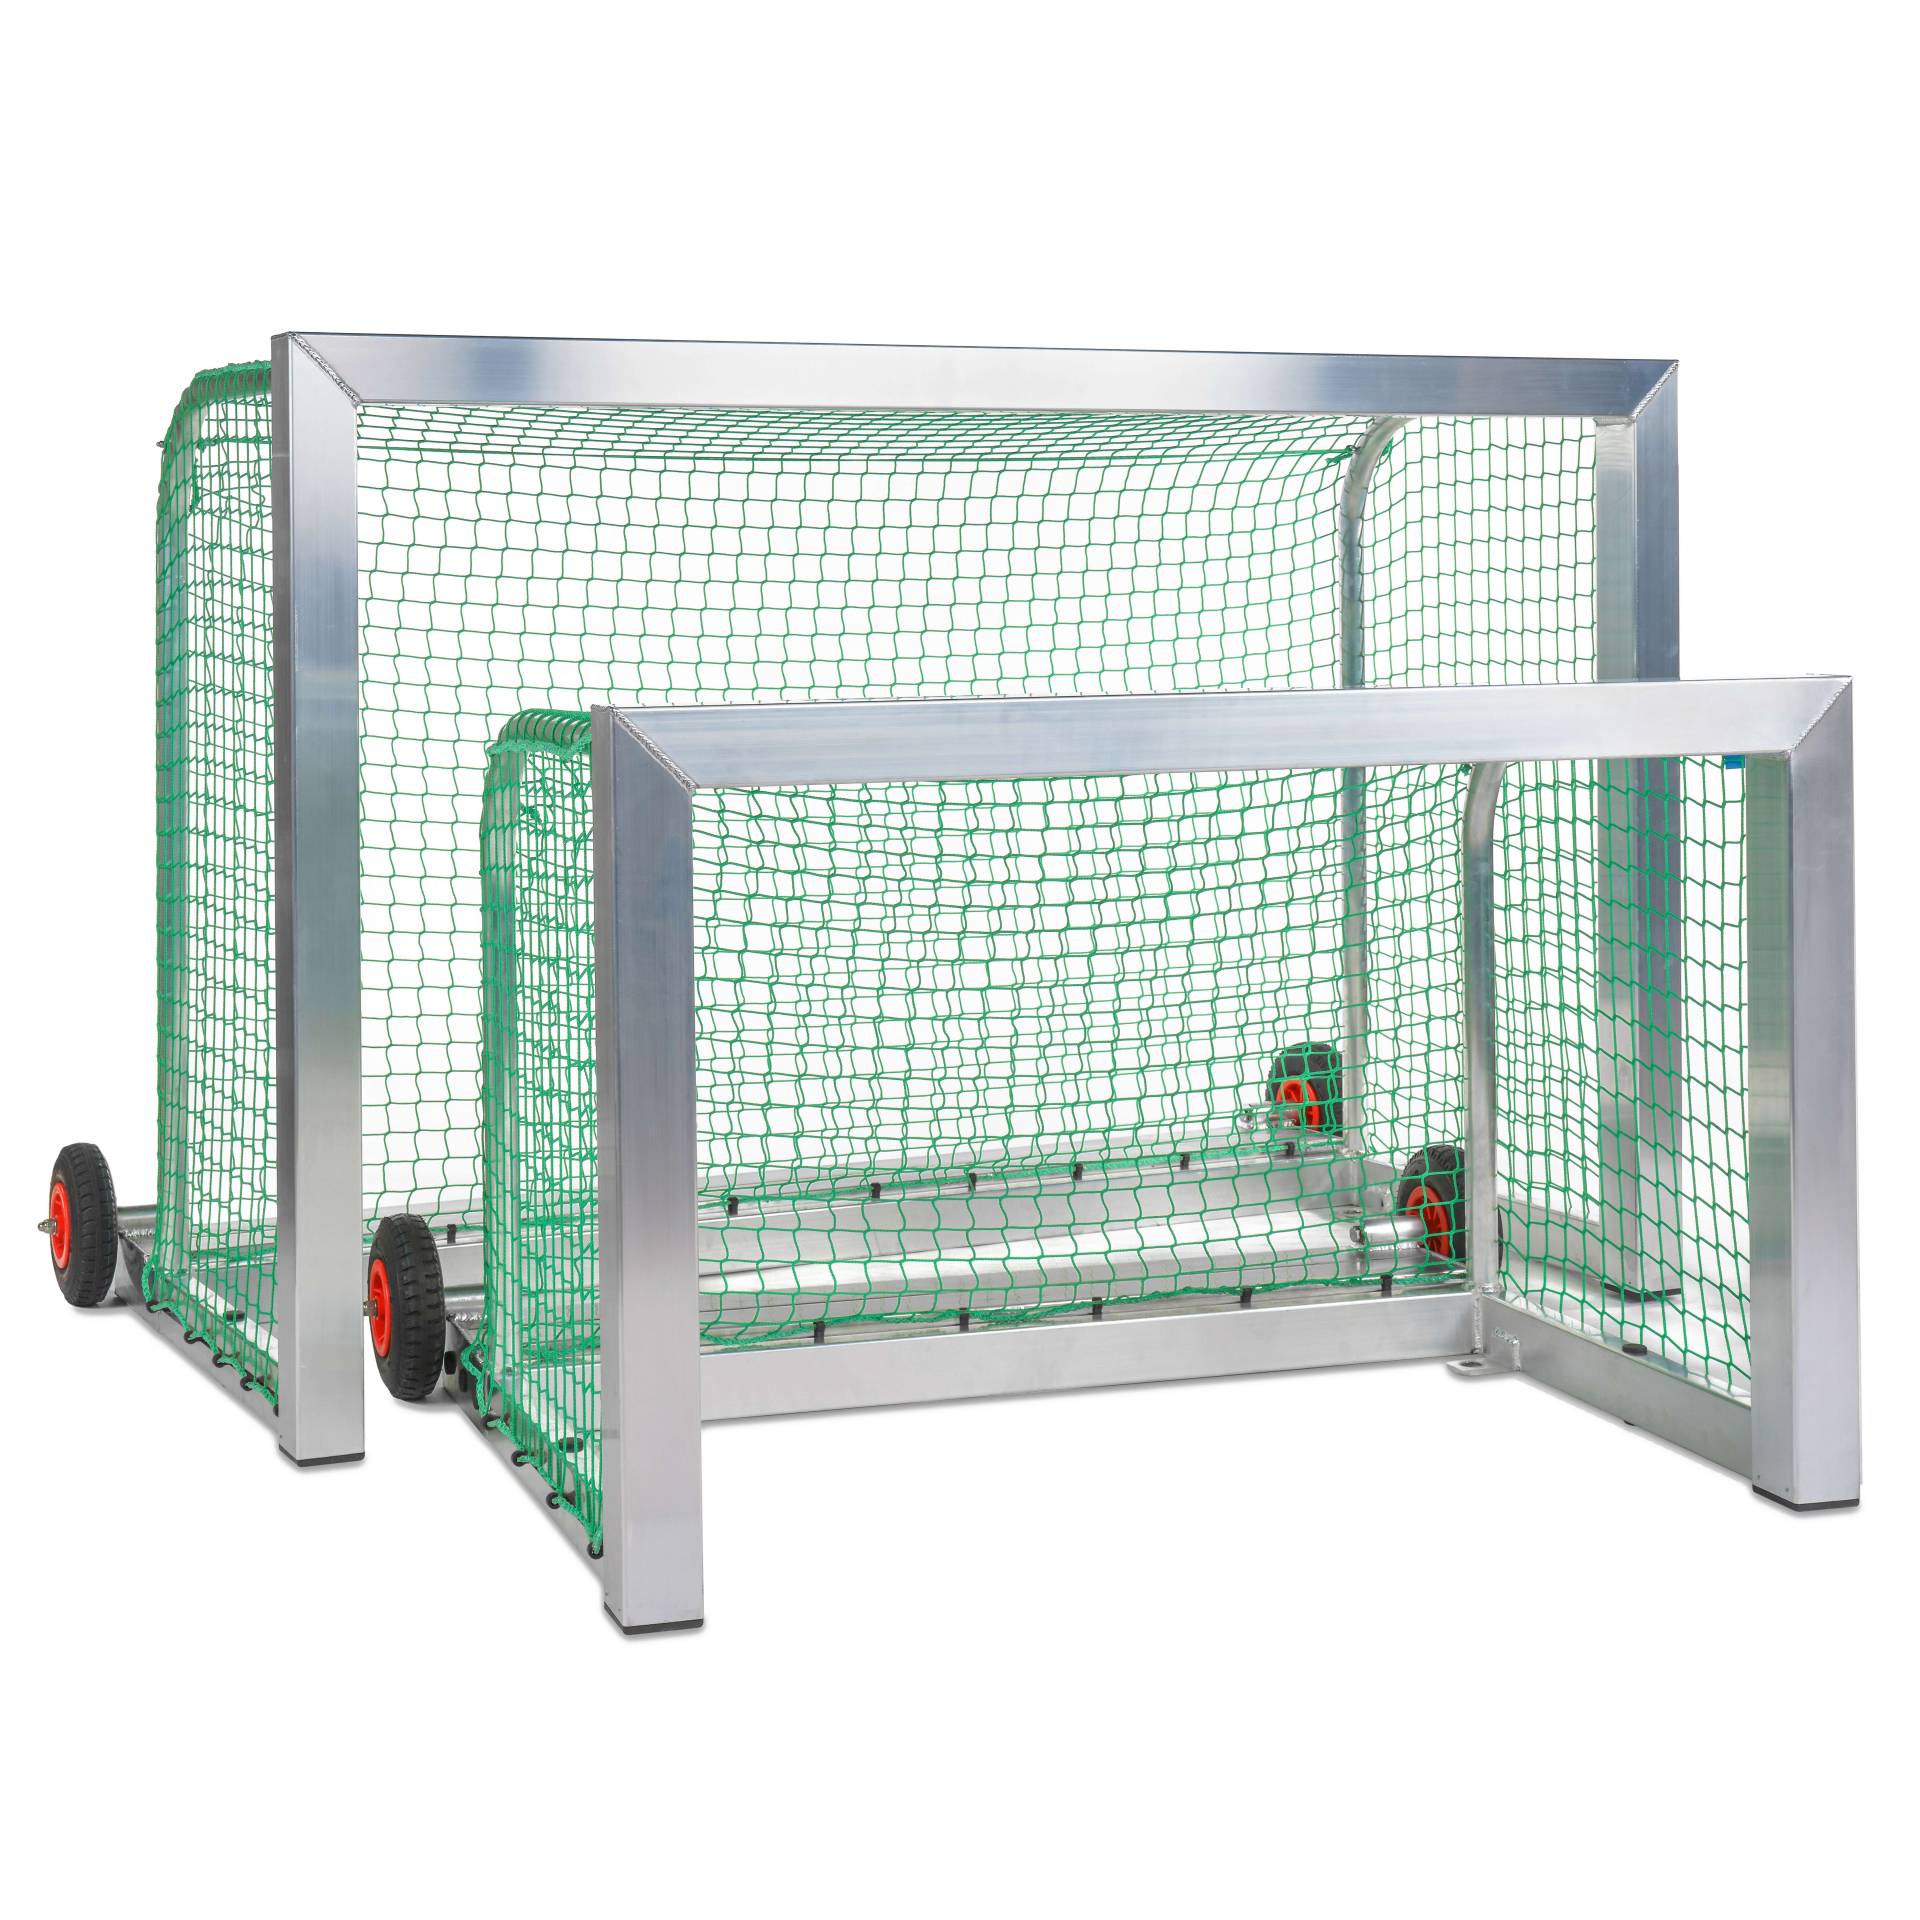 Sport-Thieme Mini-Fußballtor selbstsichernd, Inkl. Netz, grün (MW 10 cm), 1,80x1,20 m, Tortiefe 1,05 m von Sport-Thieme